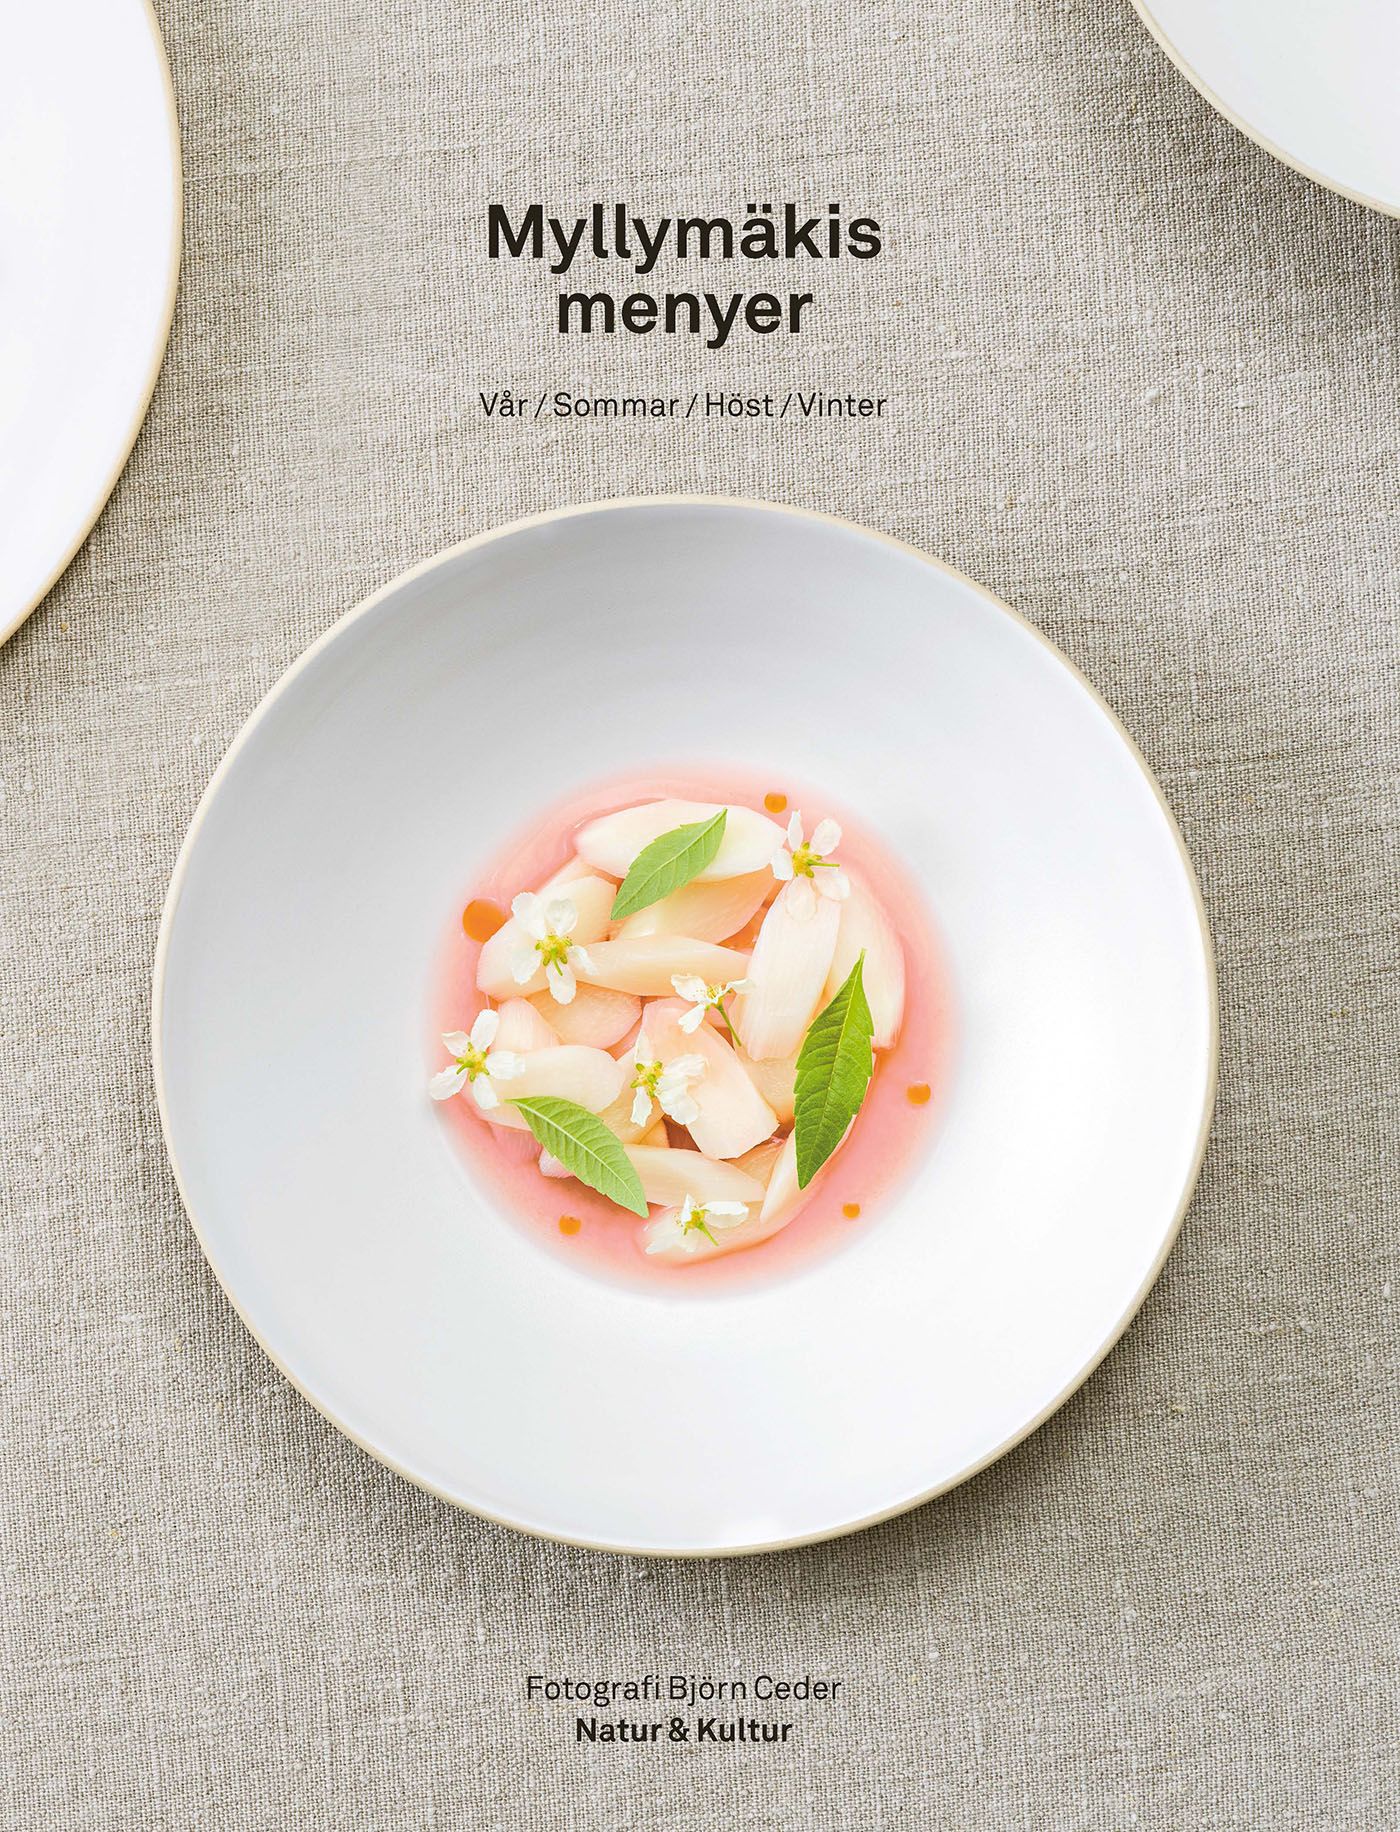 Myllymäkis menyer, e-bok av Tommy Myllymäki